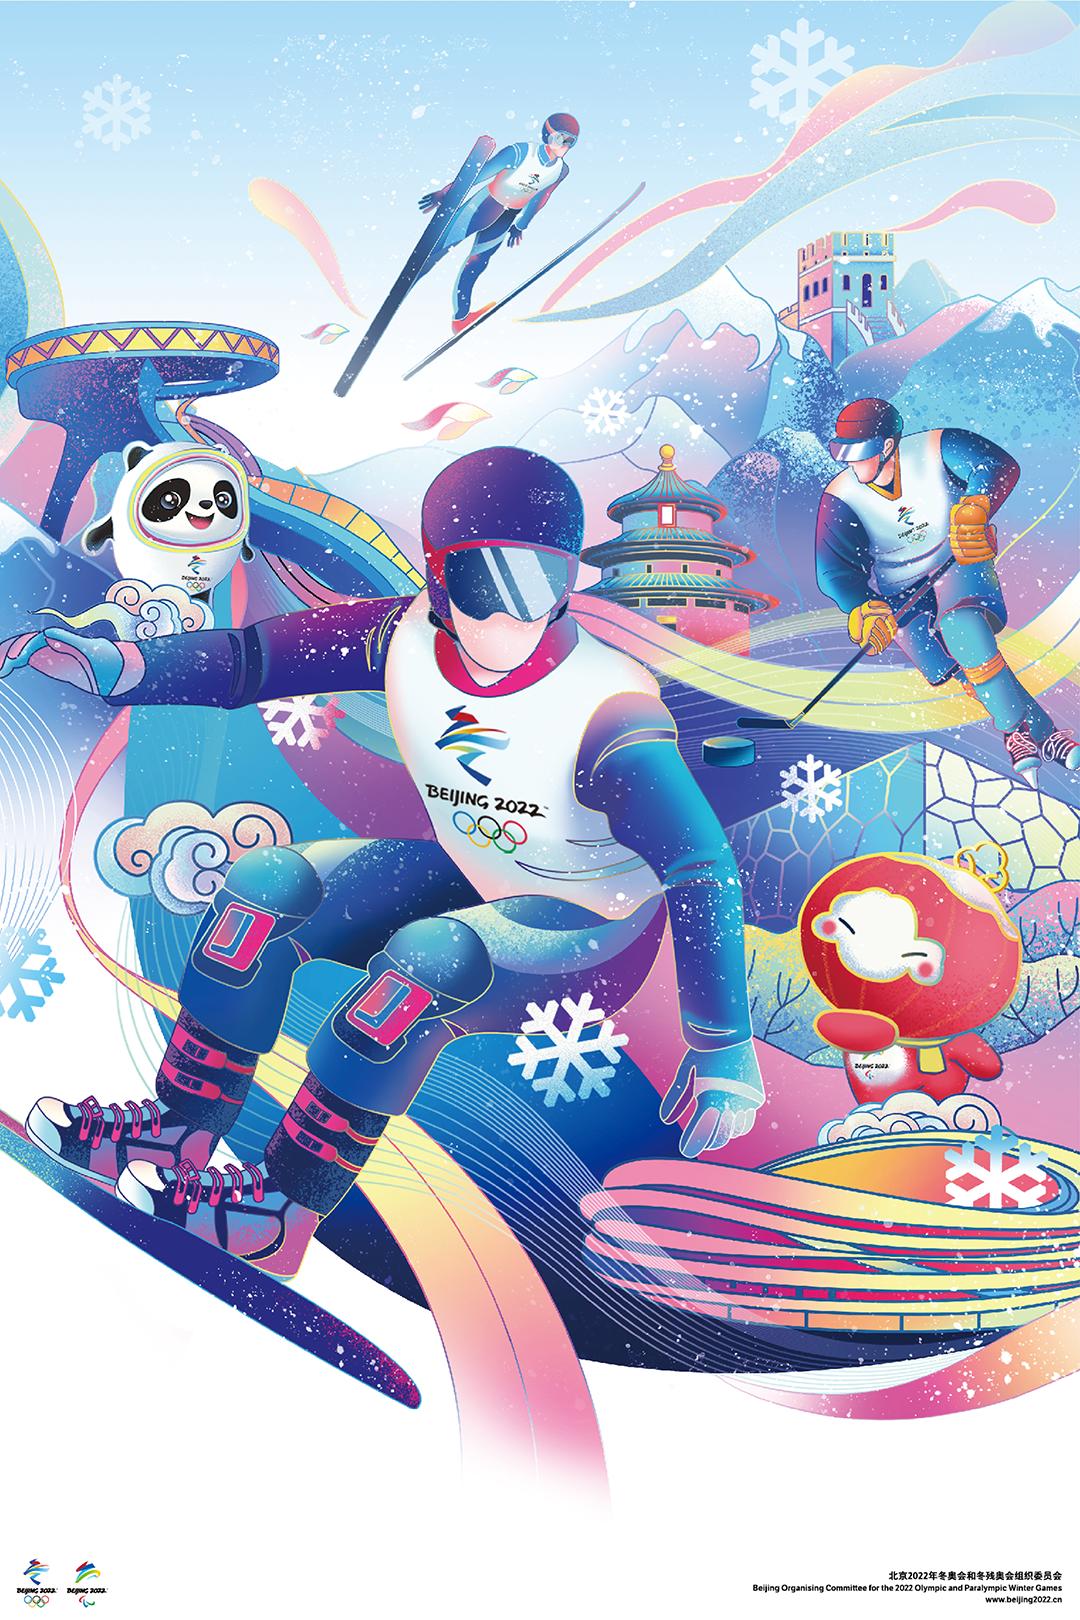 北京2022年冬奥会和冬残奥会宣传海报